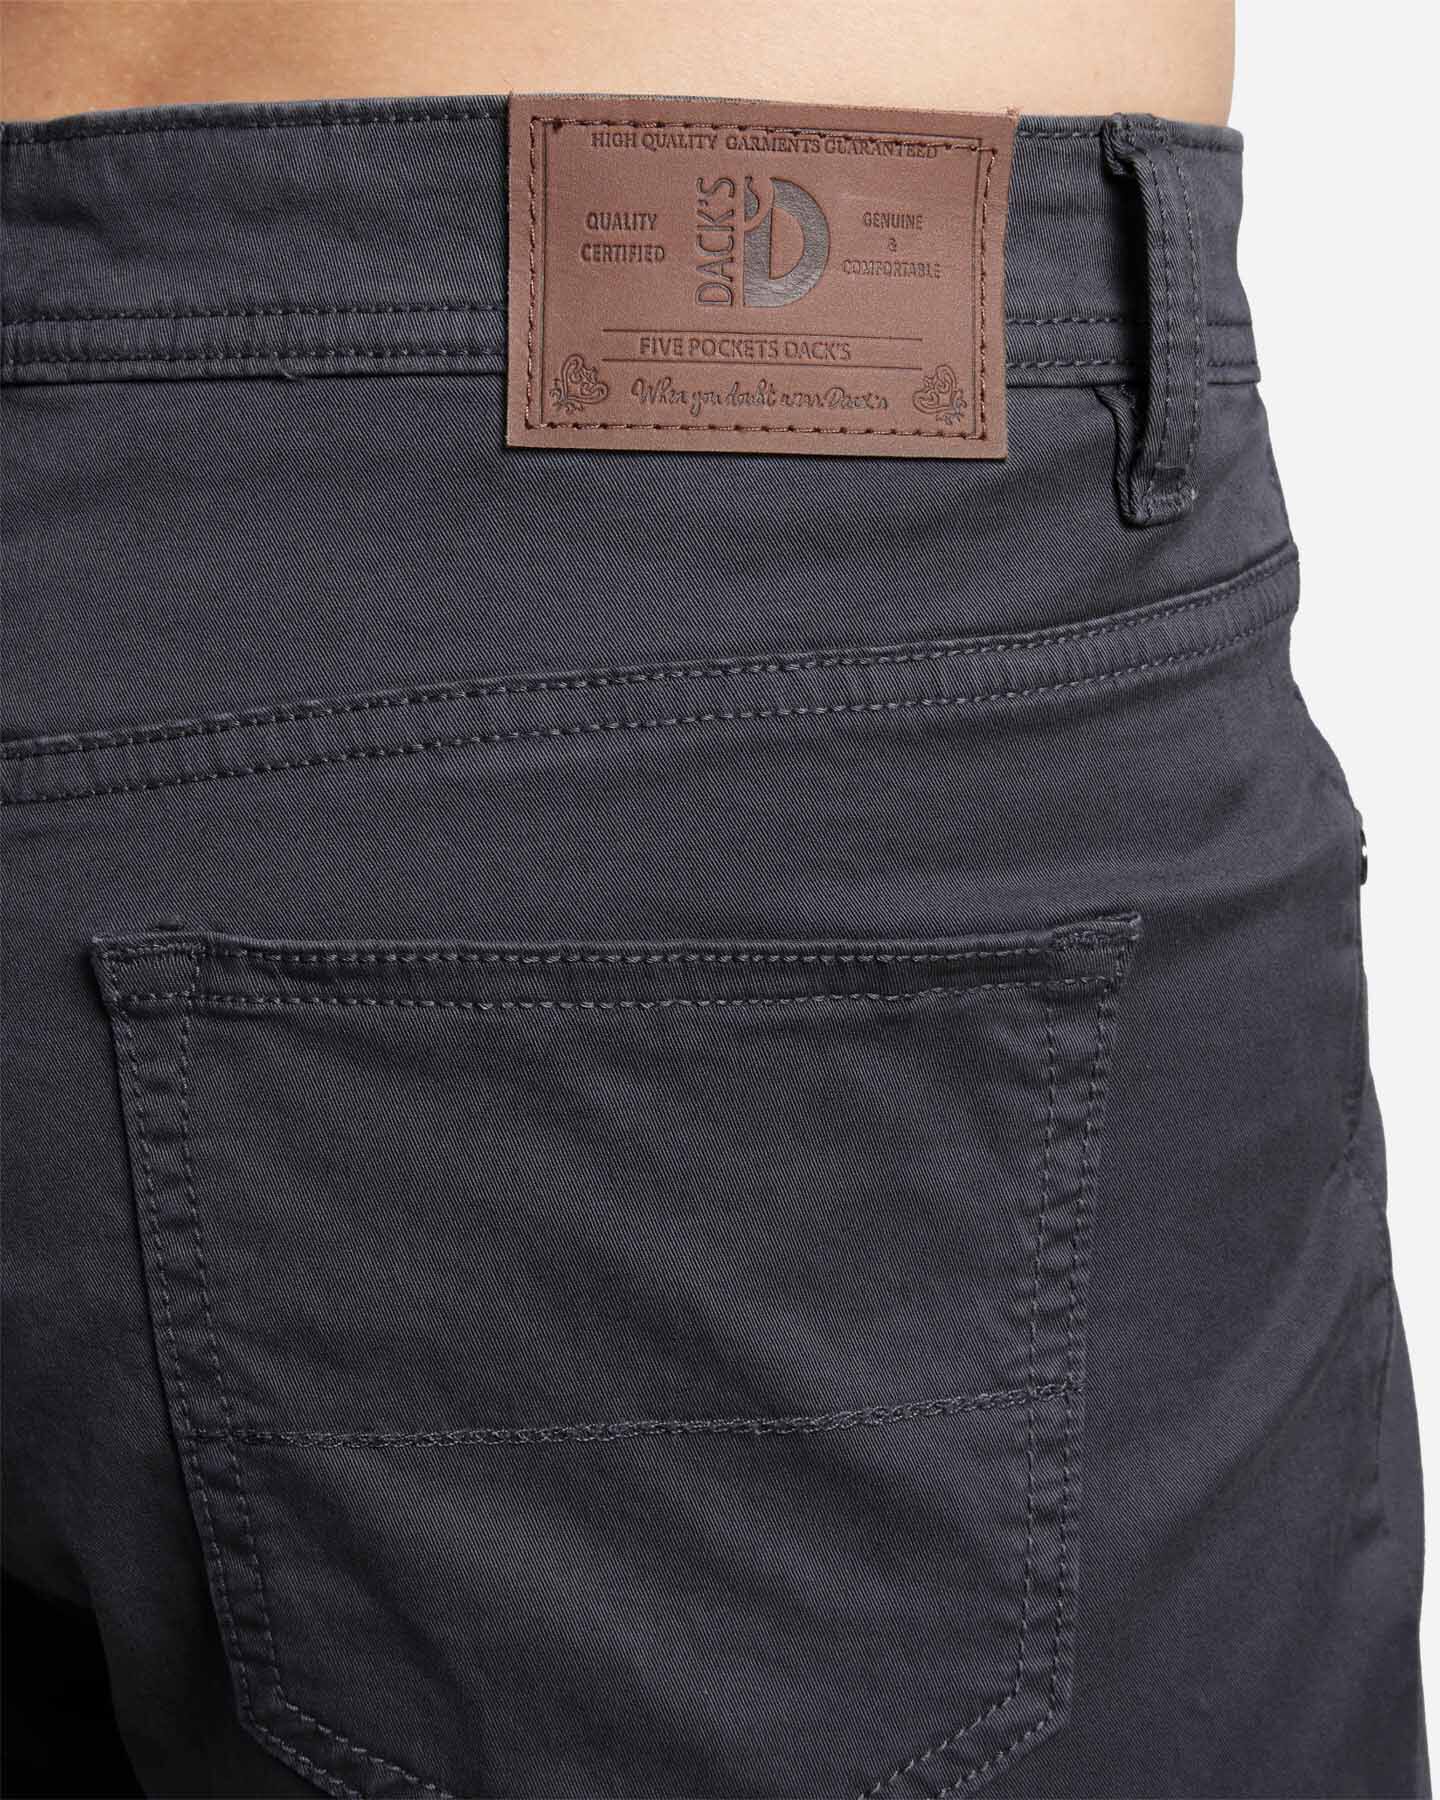  Pantalone DACK'S ESSENTIAL M S4129748|910|44 scatto 3